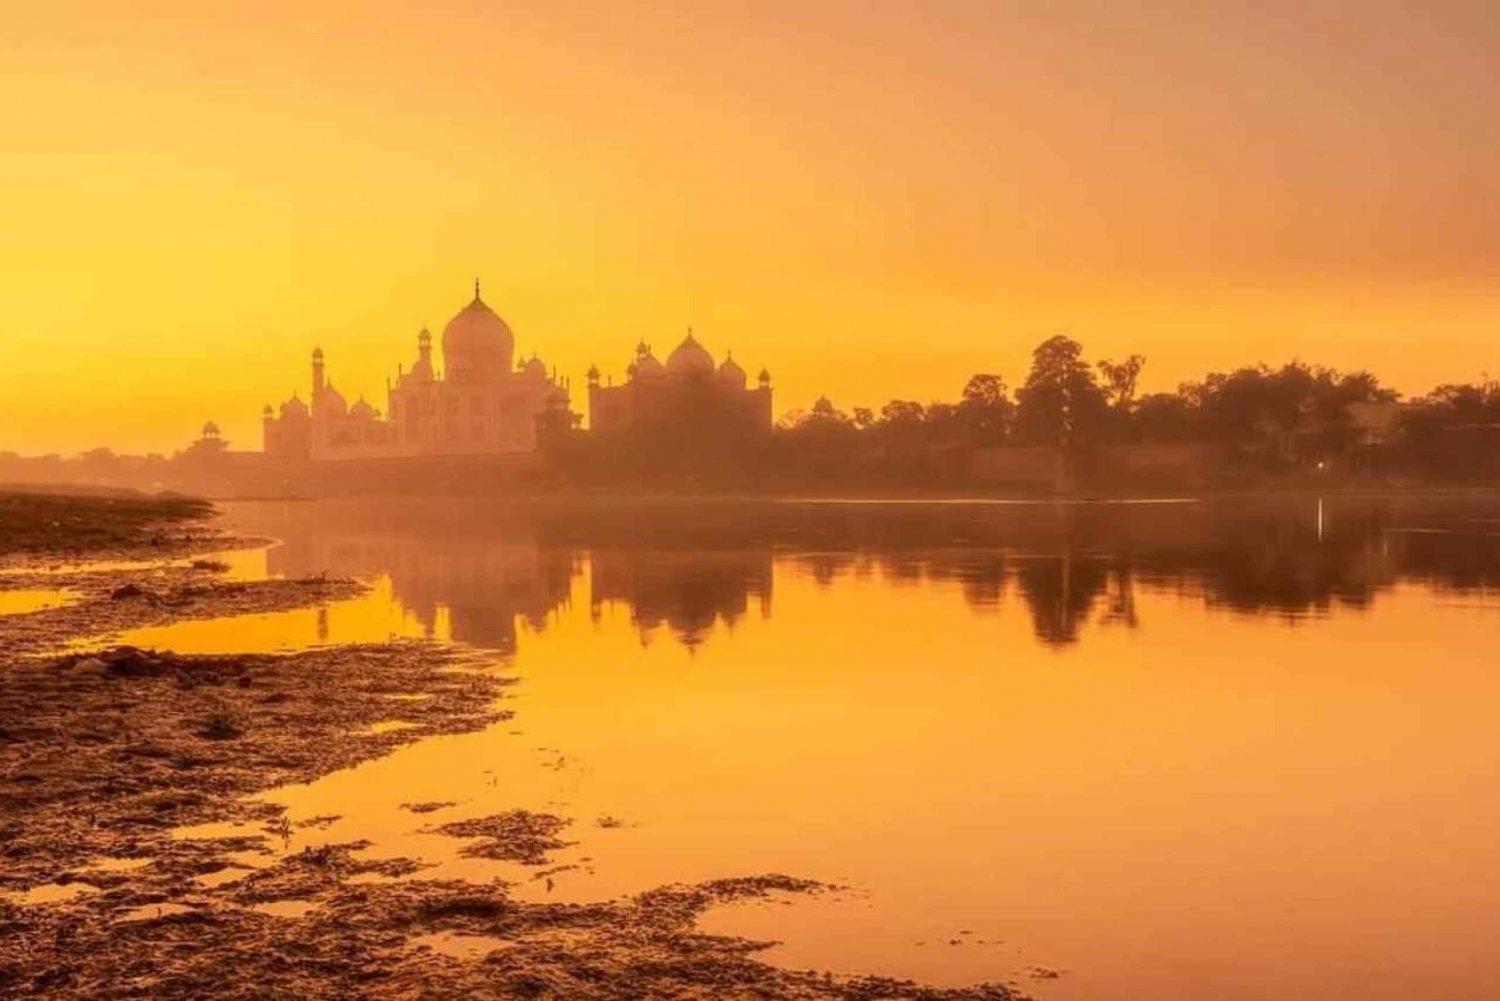 Fra Dehli: 03 dages tur til Agra og Jaipur